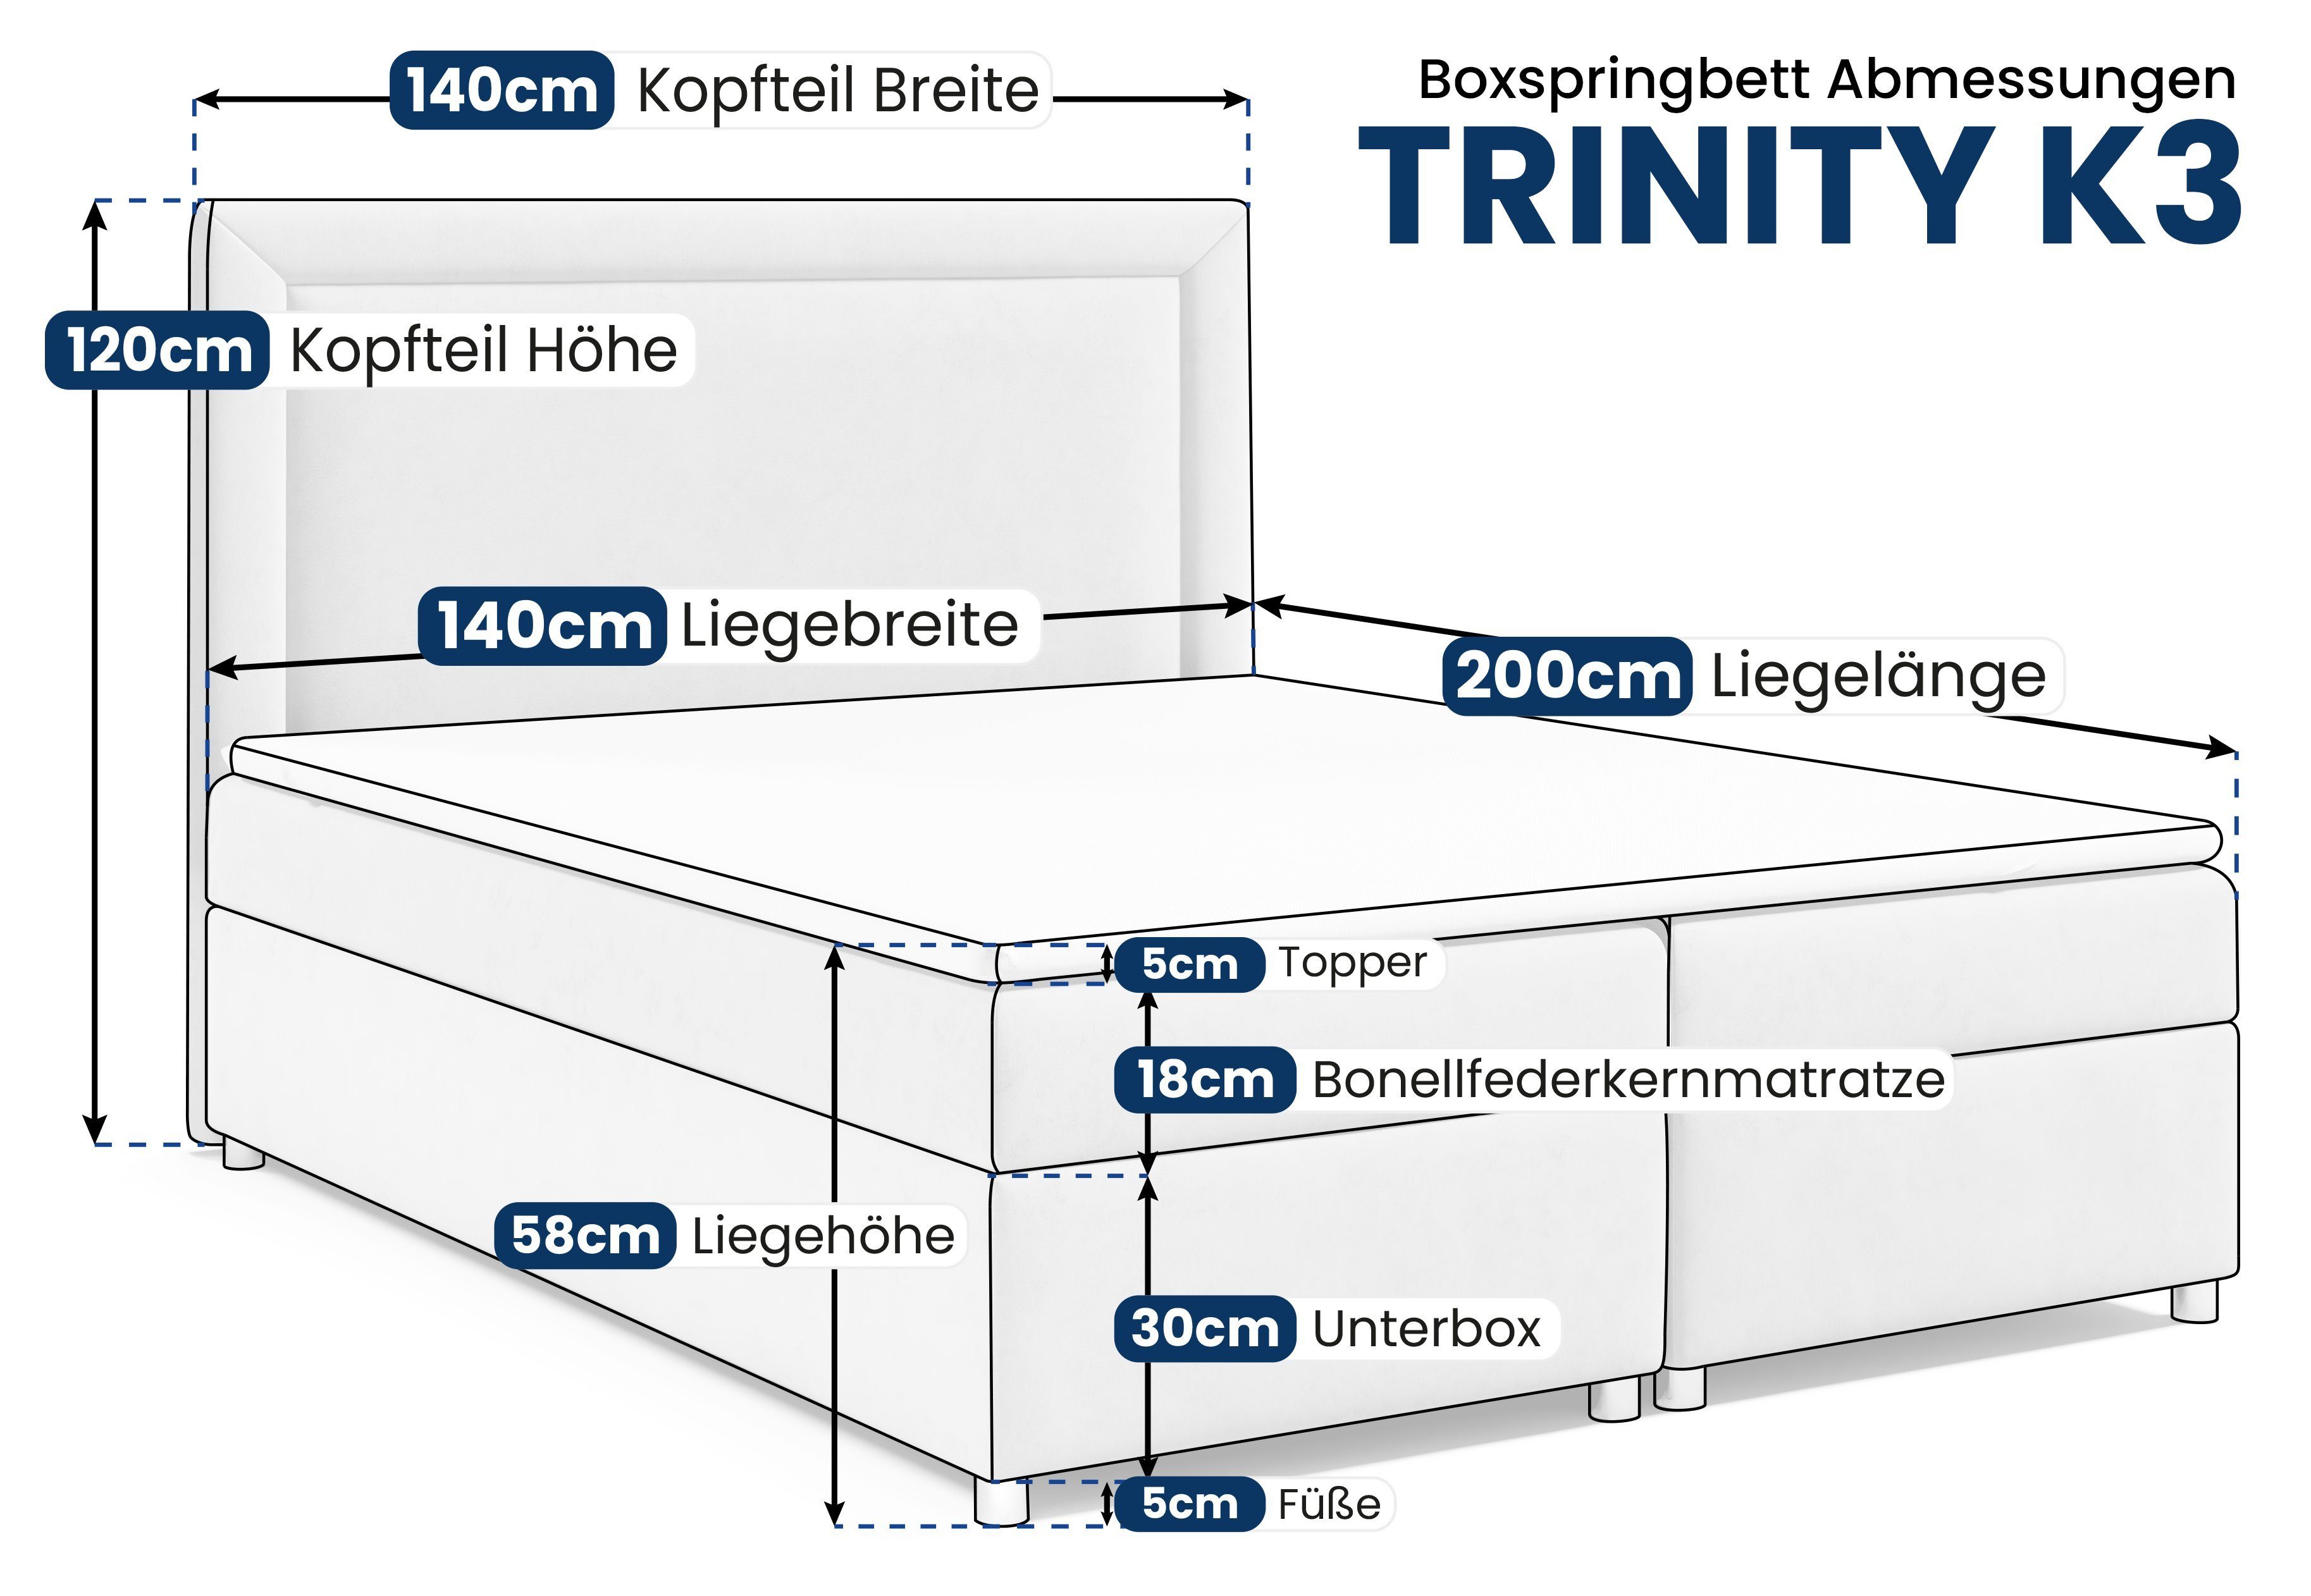 Best for Home Boxspringbett Trinity Bettkasten mit Topper Mintgrün und K3